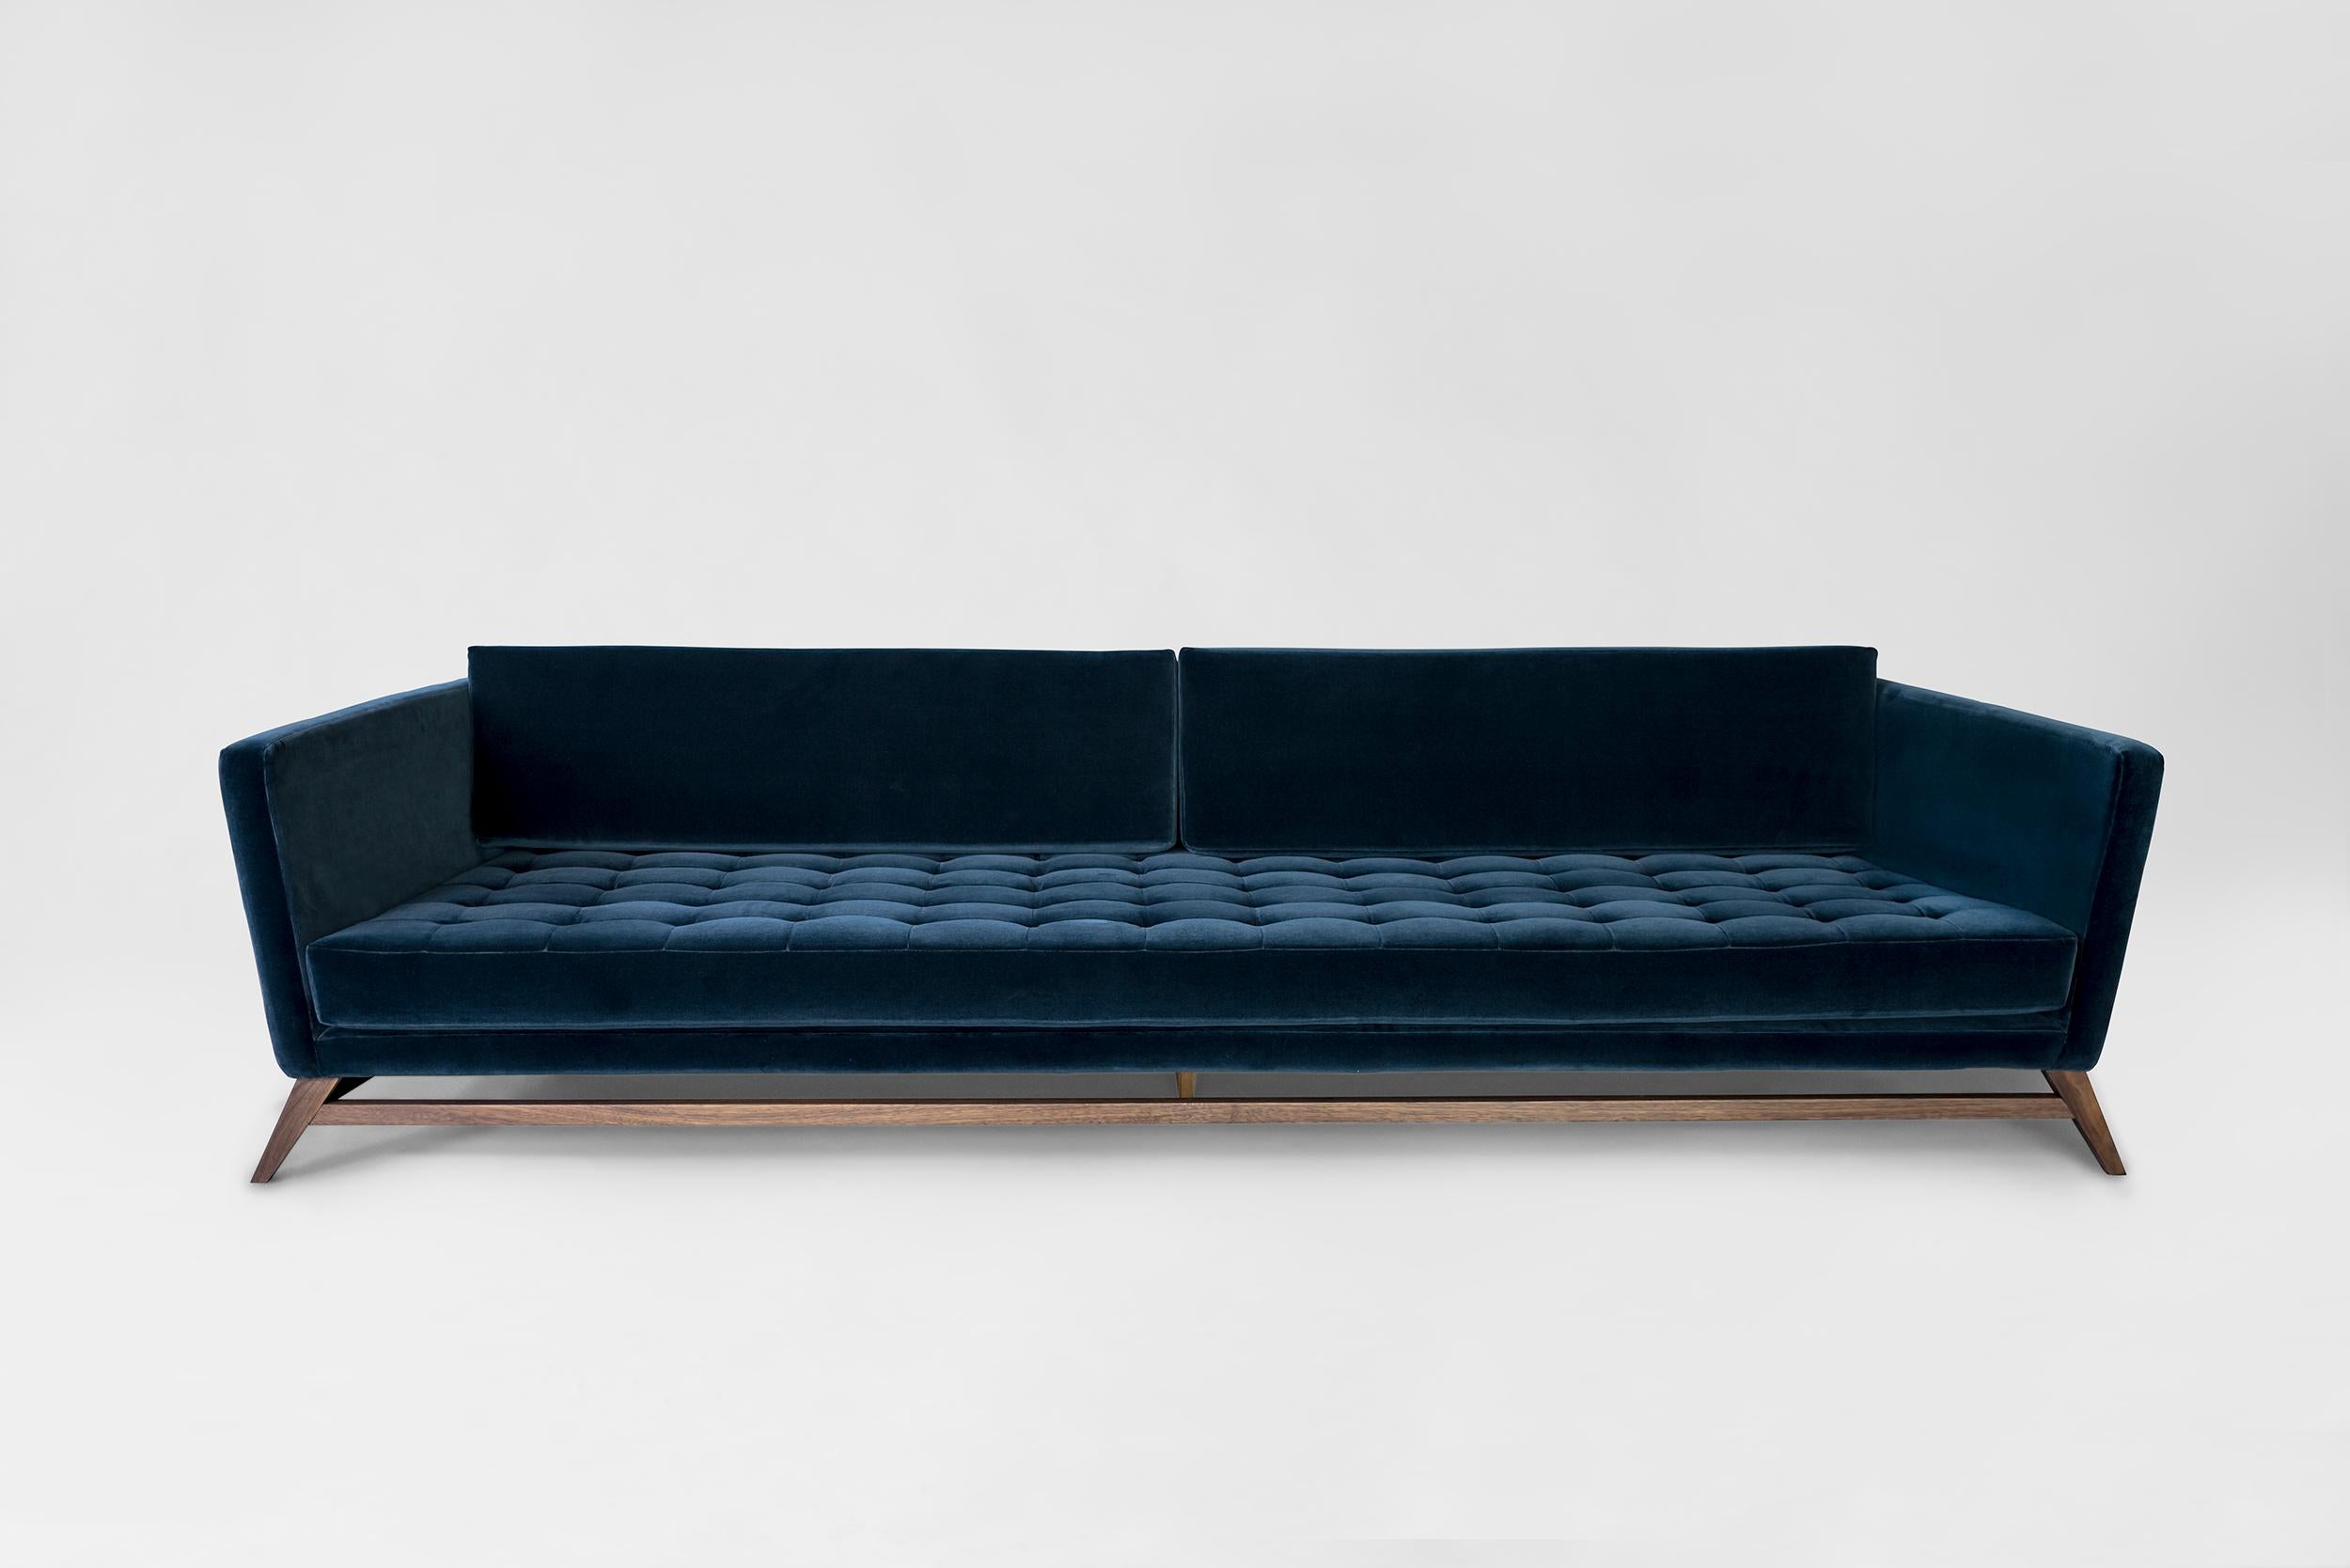 Blaues Sofa Eclipse von Atra Design.
Abmessungen: T 220 x B 108,8 x H 79 cm.
MATERIALIEN: Stoff, Nussbaumholz.
Erhältlich in anderen Farben.

Atra Design
Wir sind Atra, eine Möbelmarke, die von Atra form A, einer in Mexiko-Stadt ansässigen